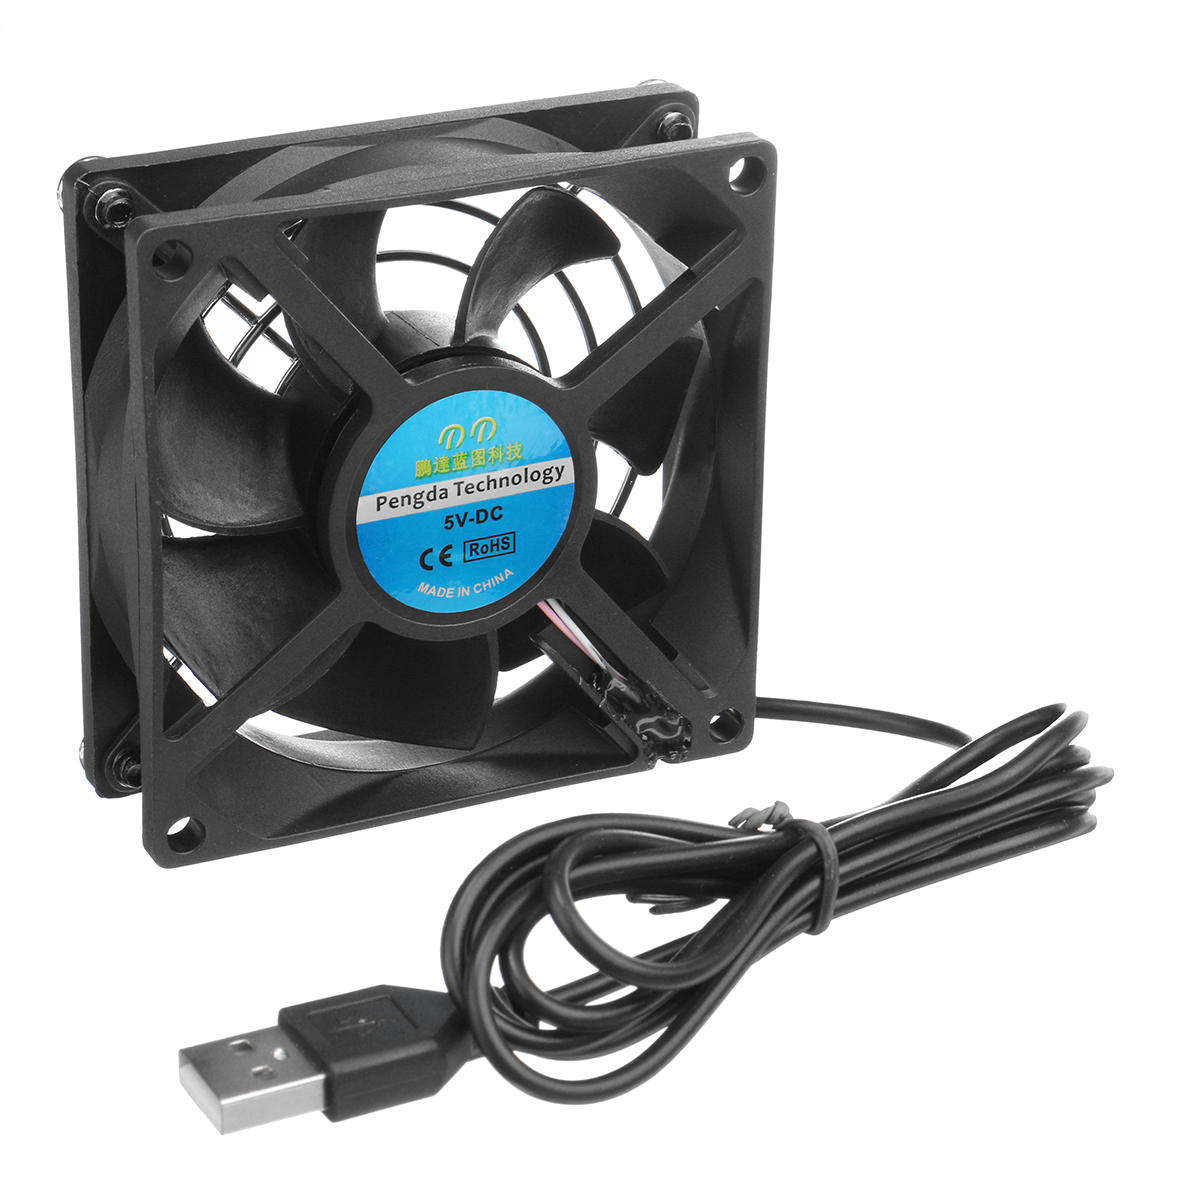 

8CM 5V USB Router TV Коробка Охлаждающий вентилятор для DIY Проект вентиляции системы охлаждения